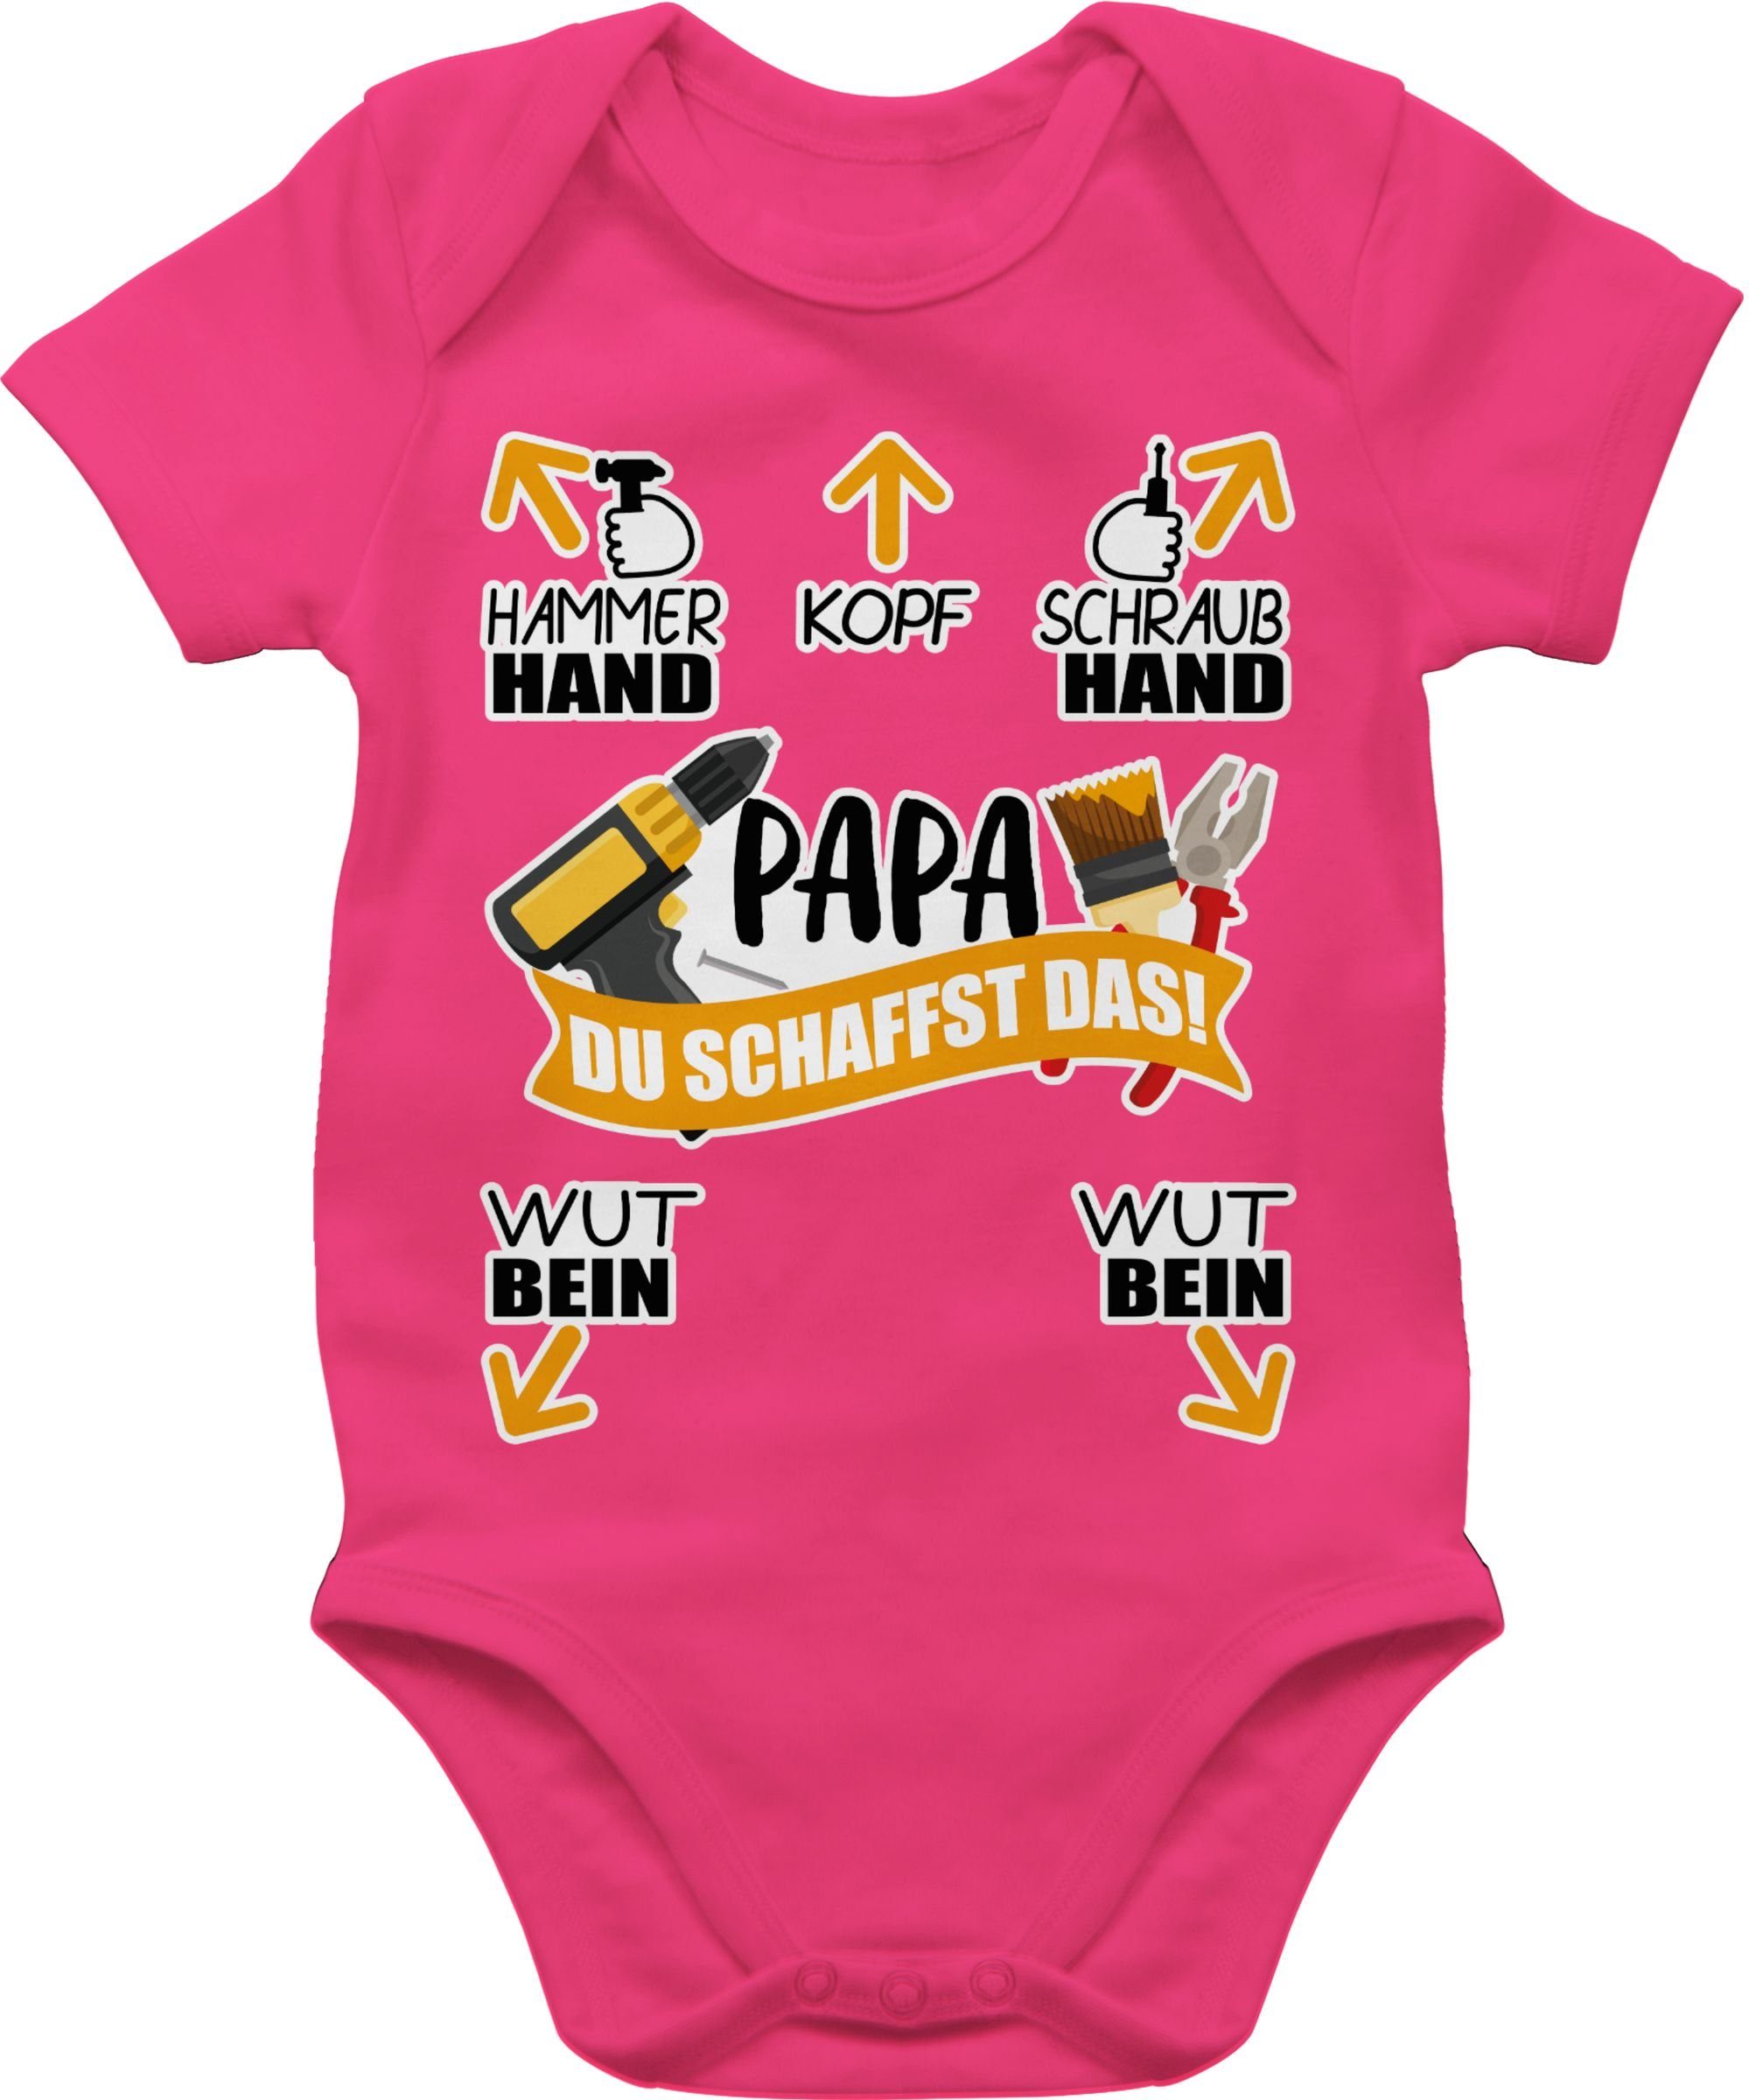 Papa 3 das! Werkzeug - Baby Geschenk Fuchsia Shirtbody Shirtracer - schaffst Du Vatertag